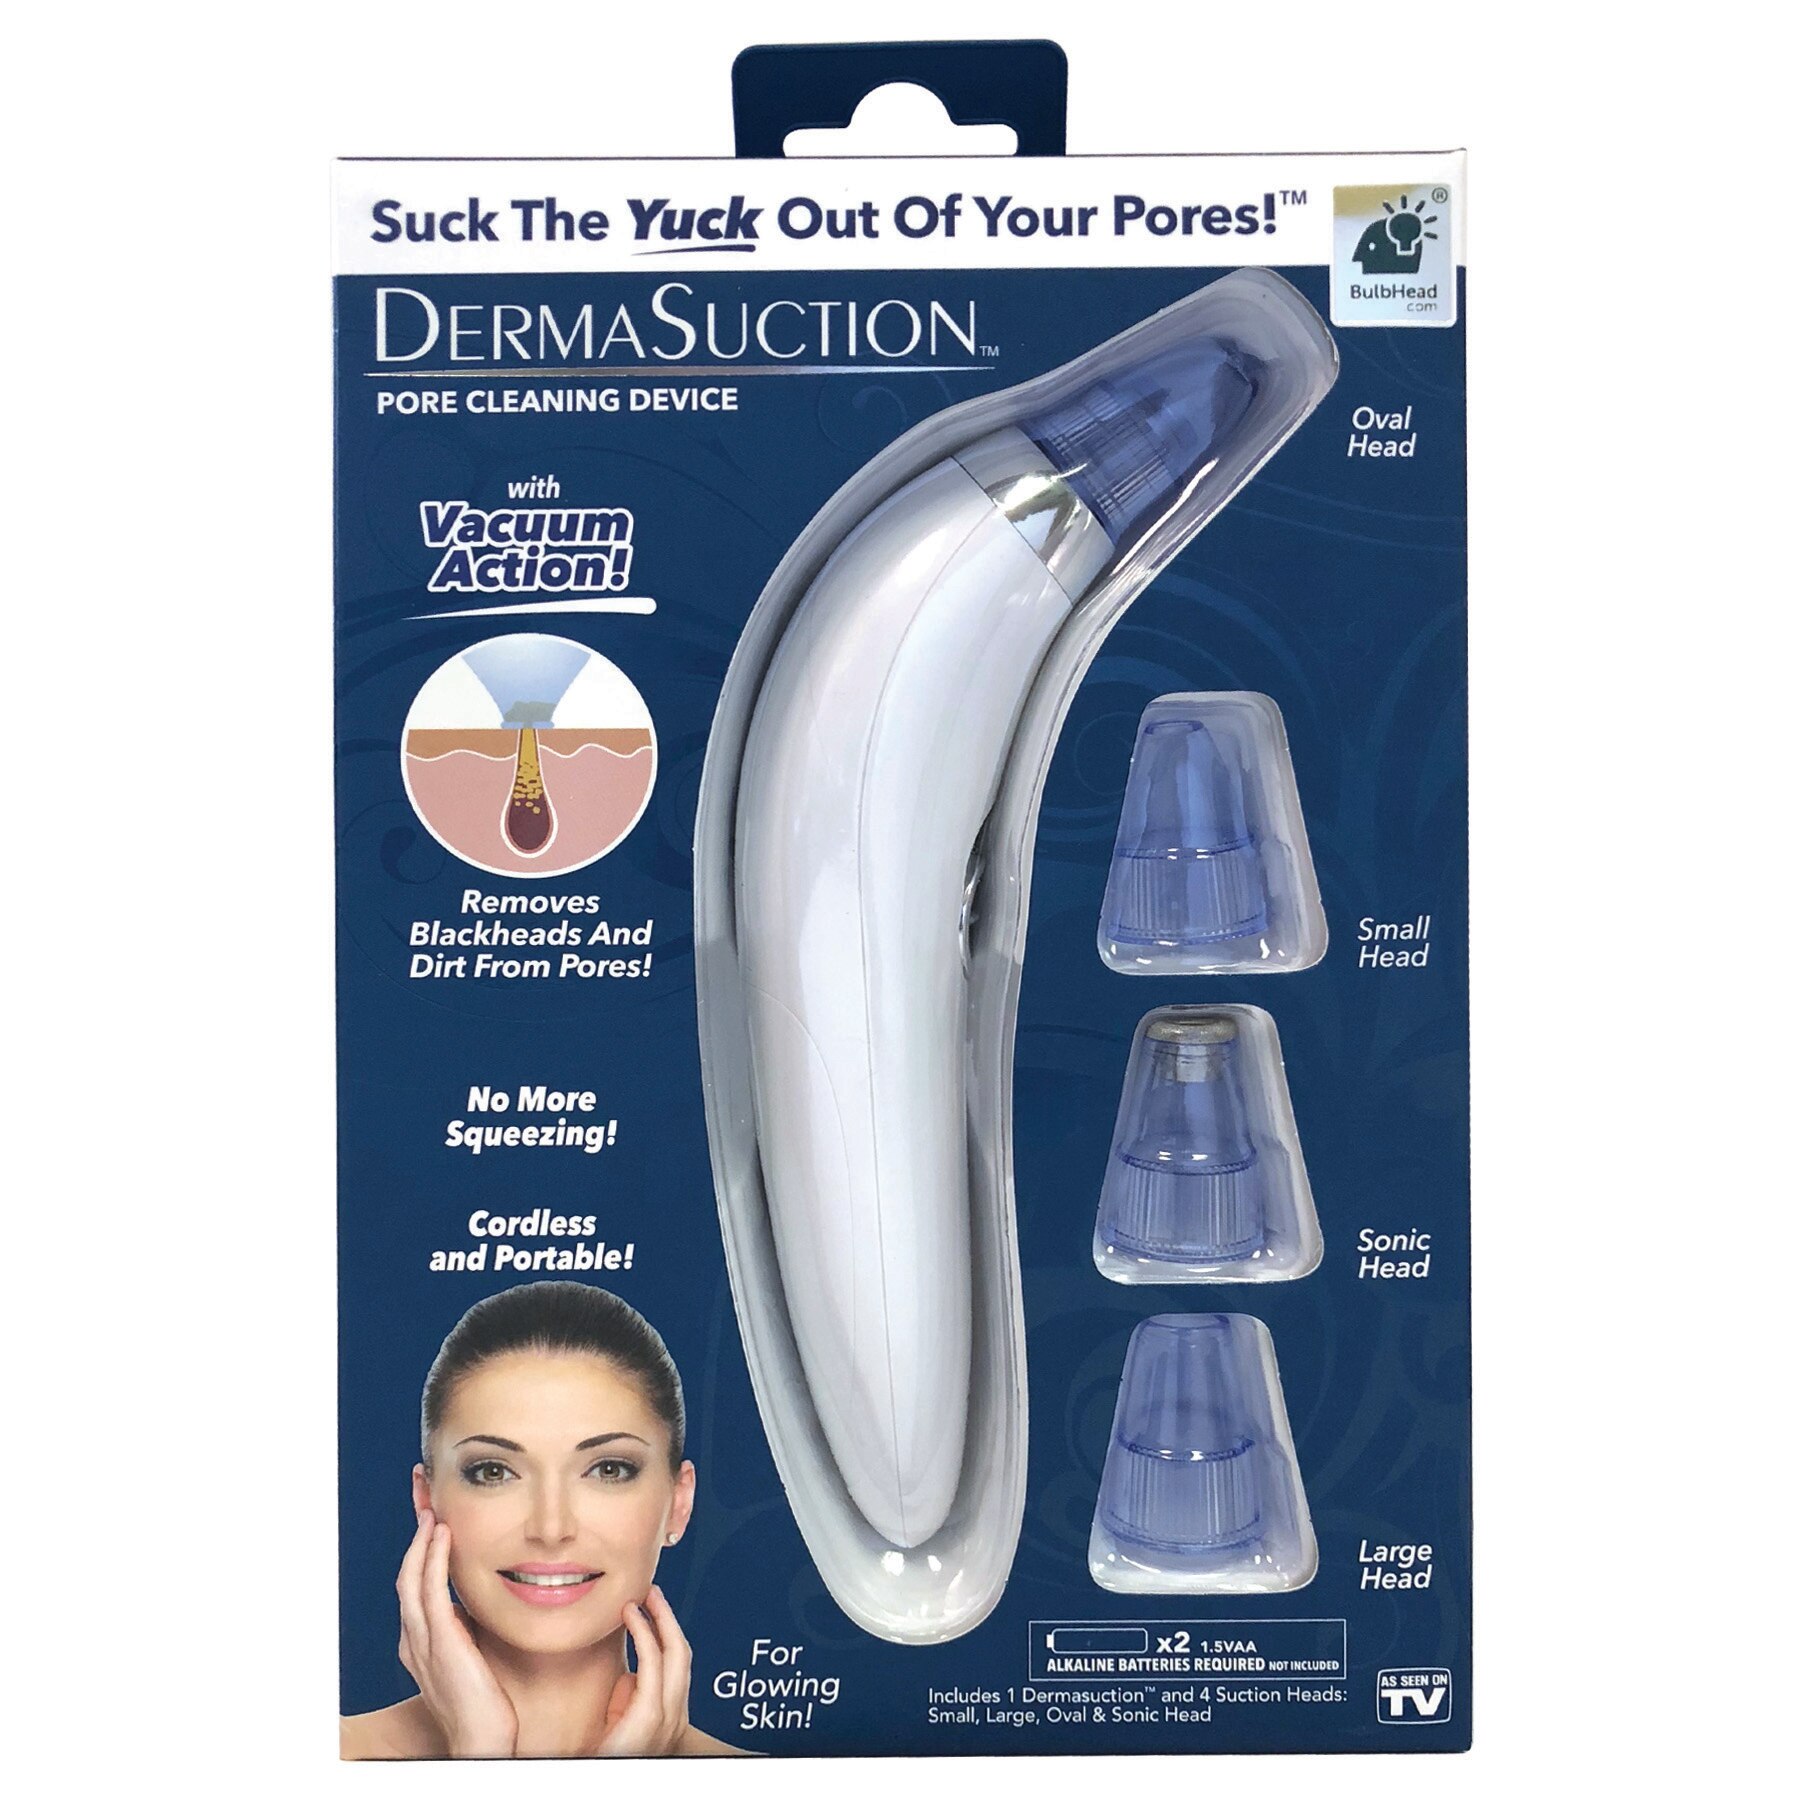 DermaSuction - Dispositivo para limpiar los poros